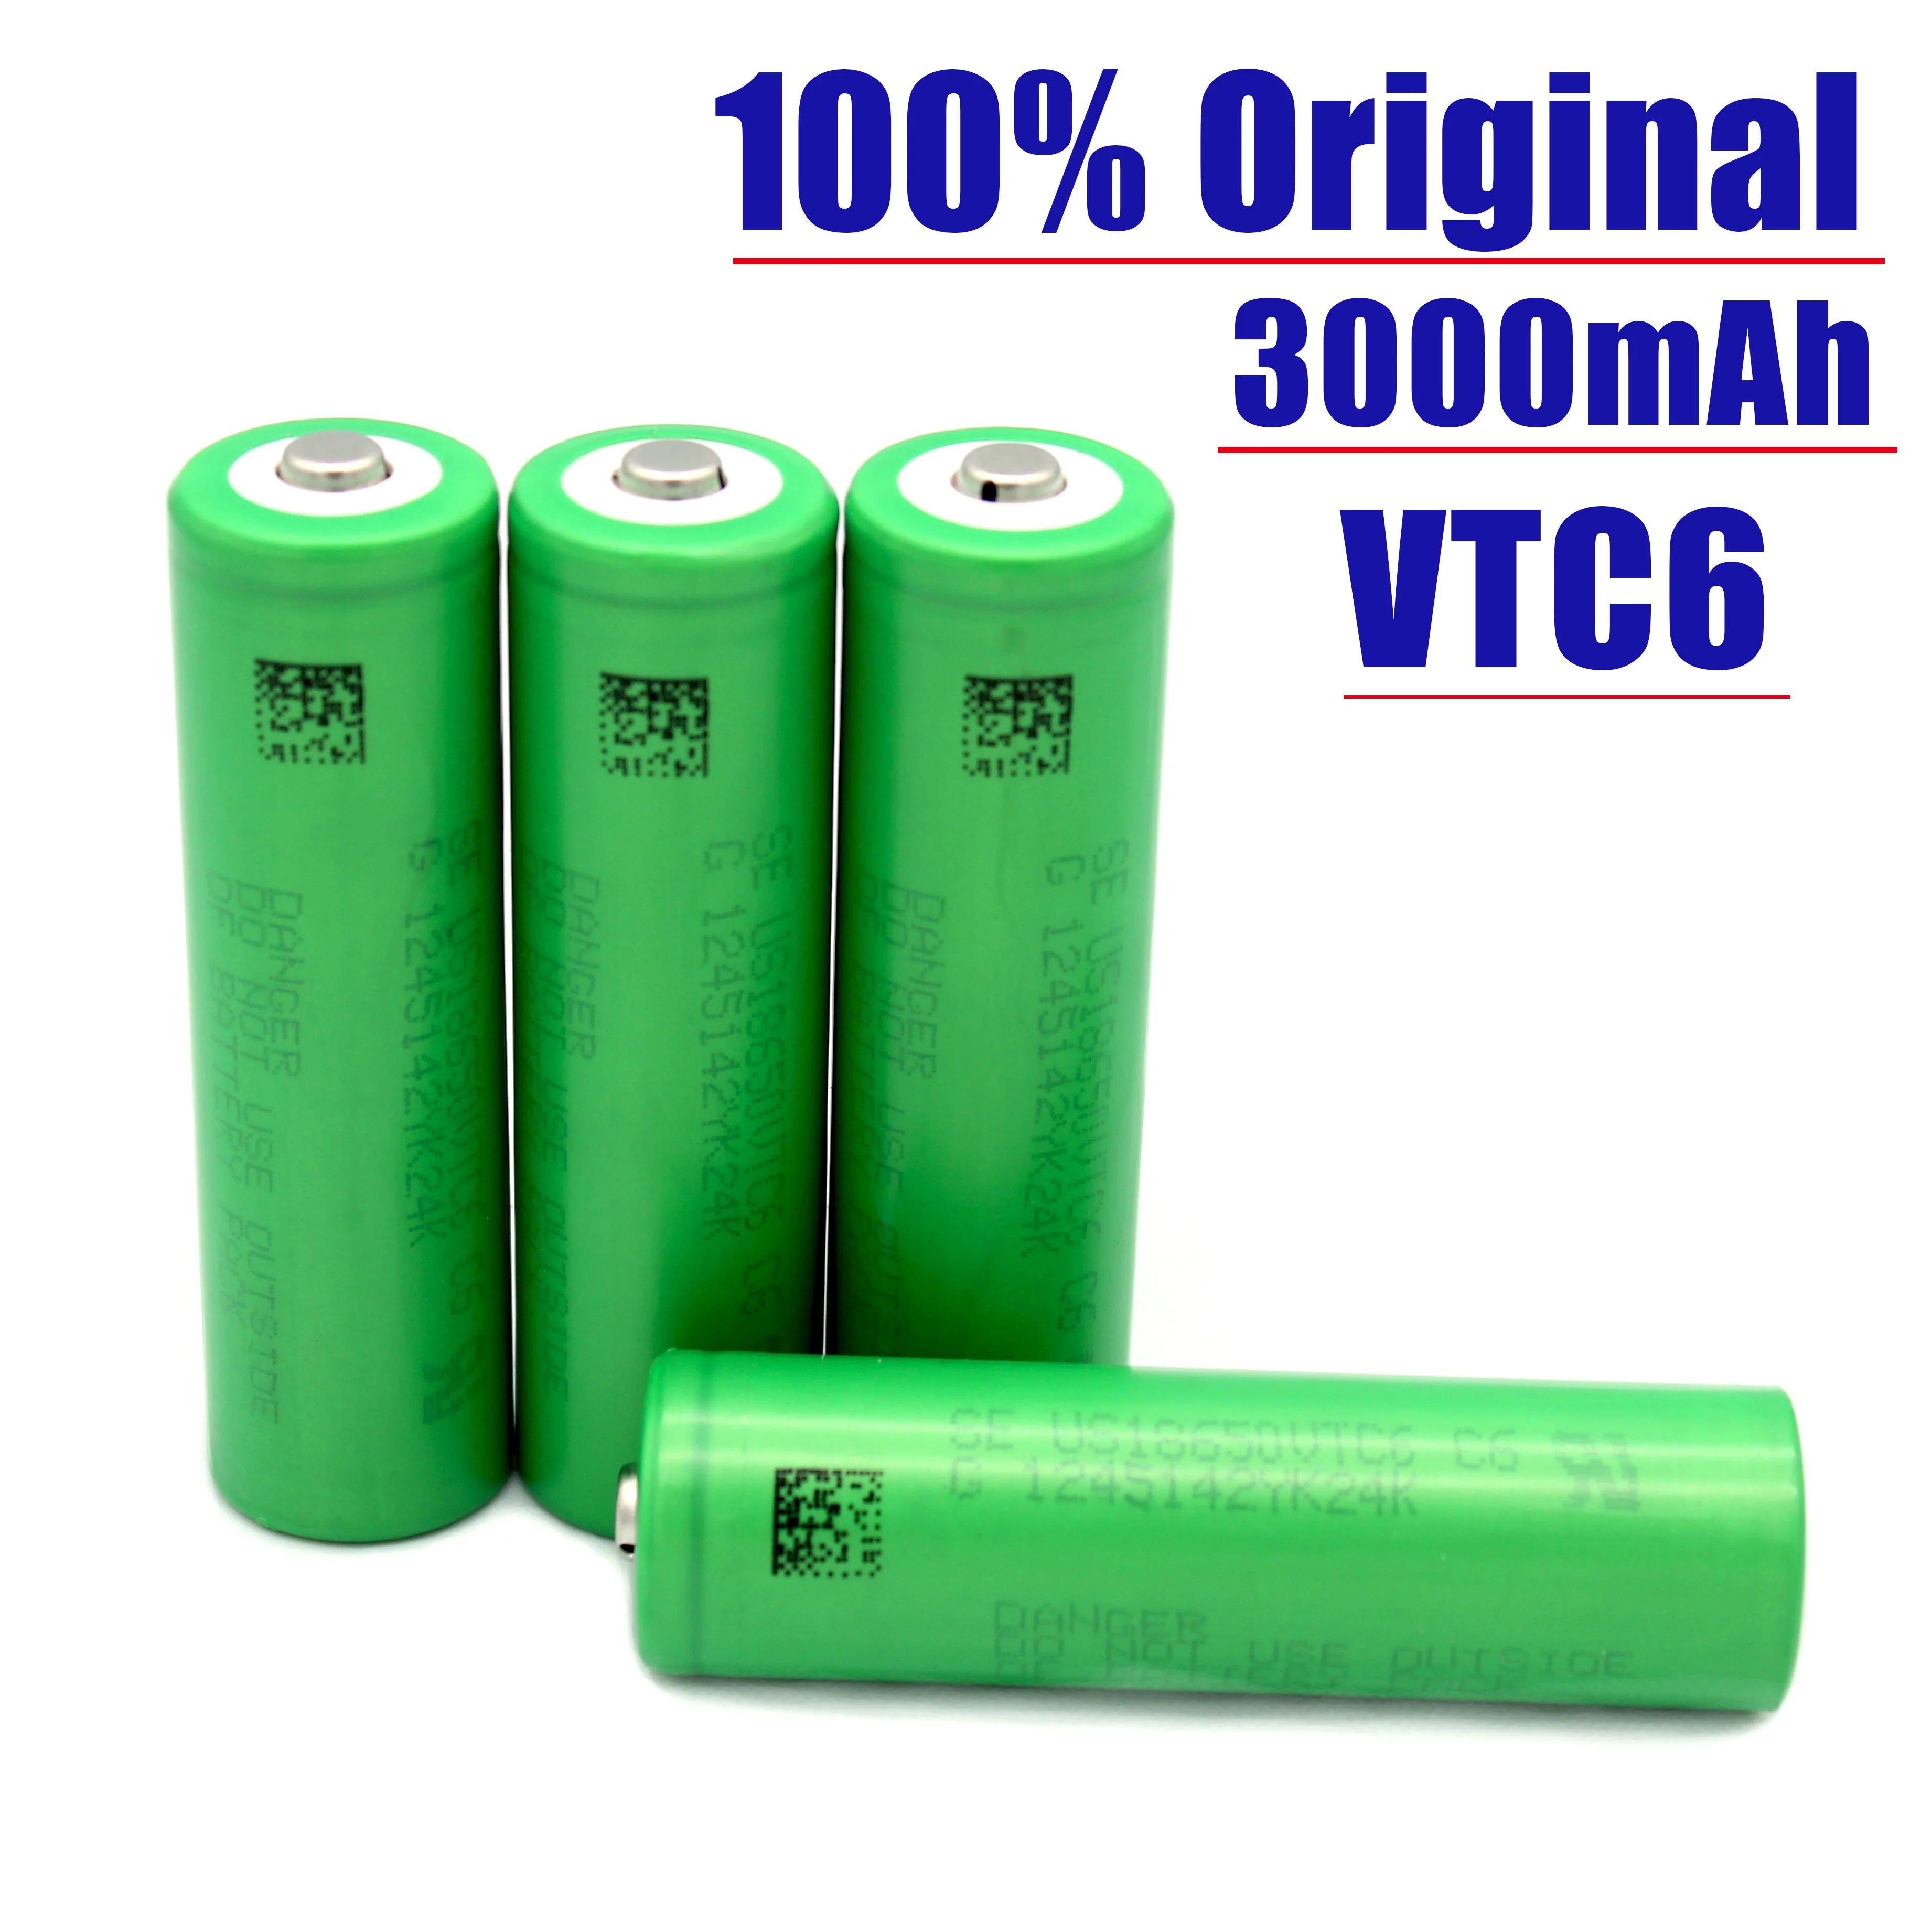 

2-20PCS 100% Original .VTC6.18650.batería. de litio,3,7V 3000mAh,para.US18650.VTC 6,30 EINE, juguetes, linterna, herramientas.